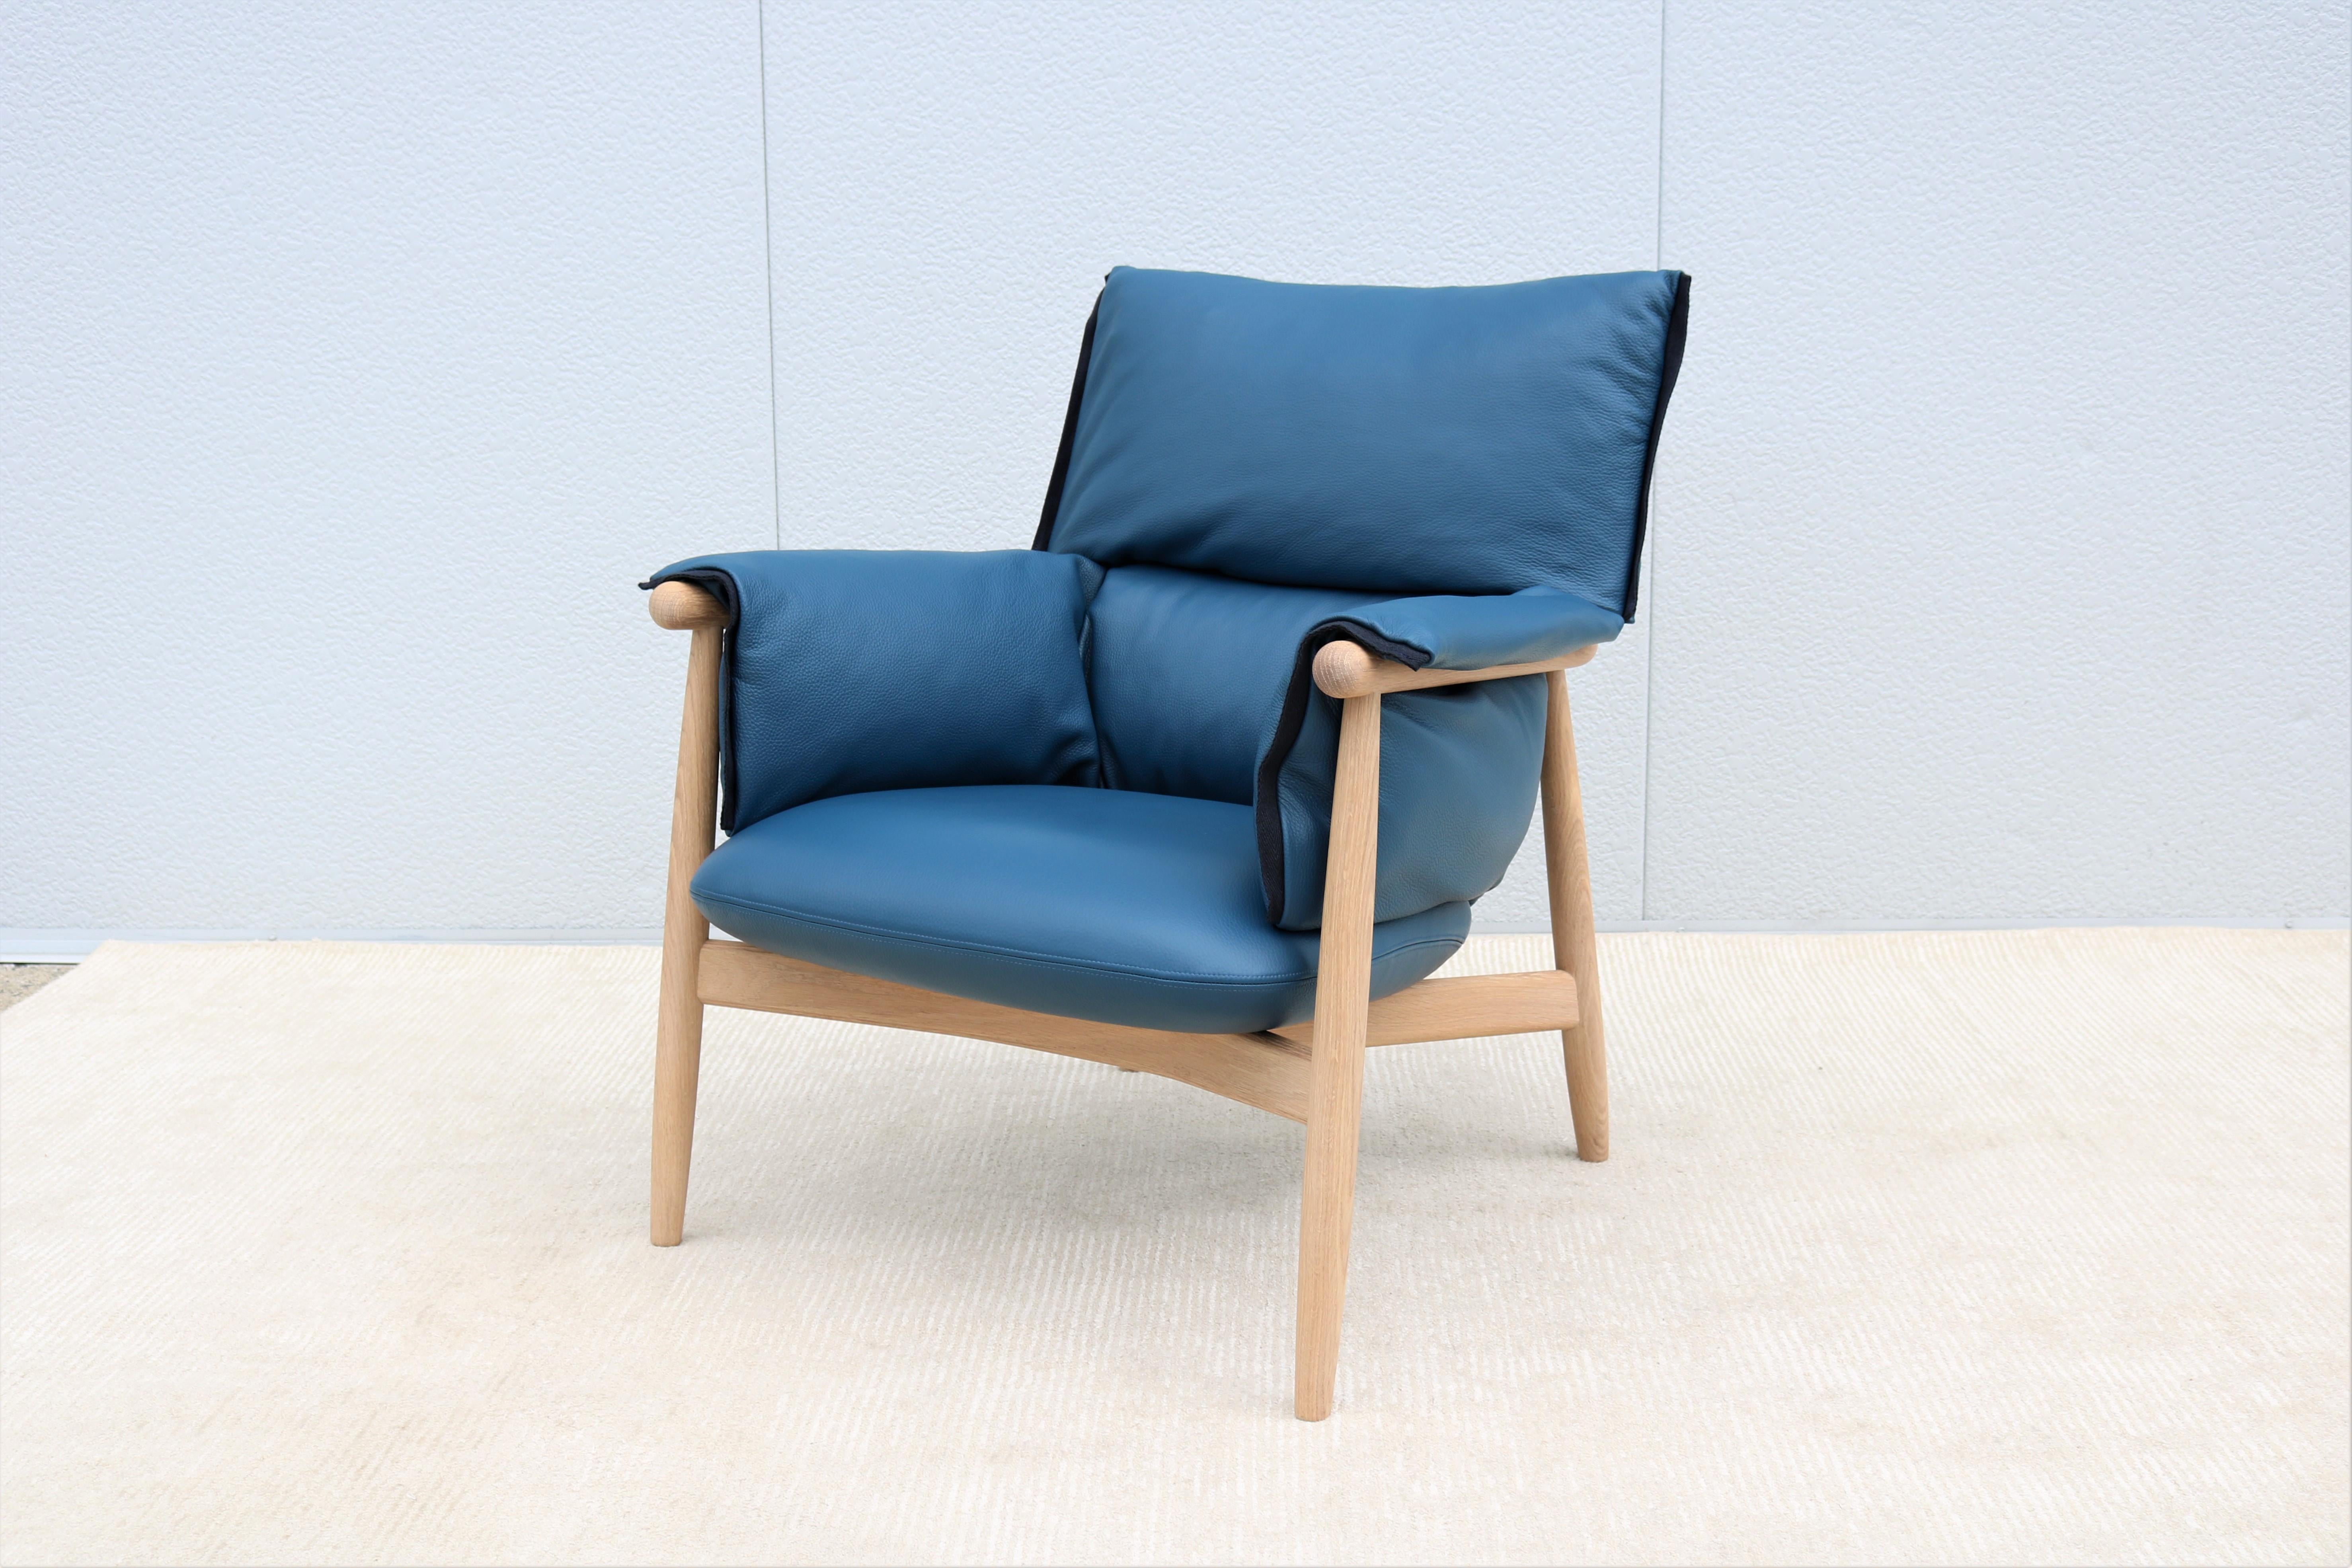 Der elegante Loungesessel E015 Embrace wurde 2016 von EOOS für Carl Hansen & Son entworfen, um höchsten Komfort und Entspannung zu bieten.
Das auffällige Design besteht aus einer durchgehend sichtbaren Holzstruktur mit einer dreiteiligen,